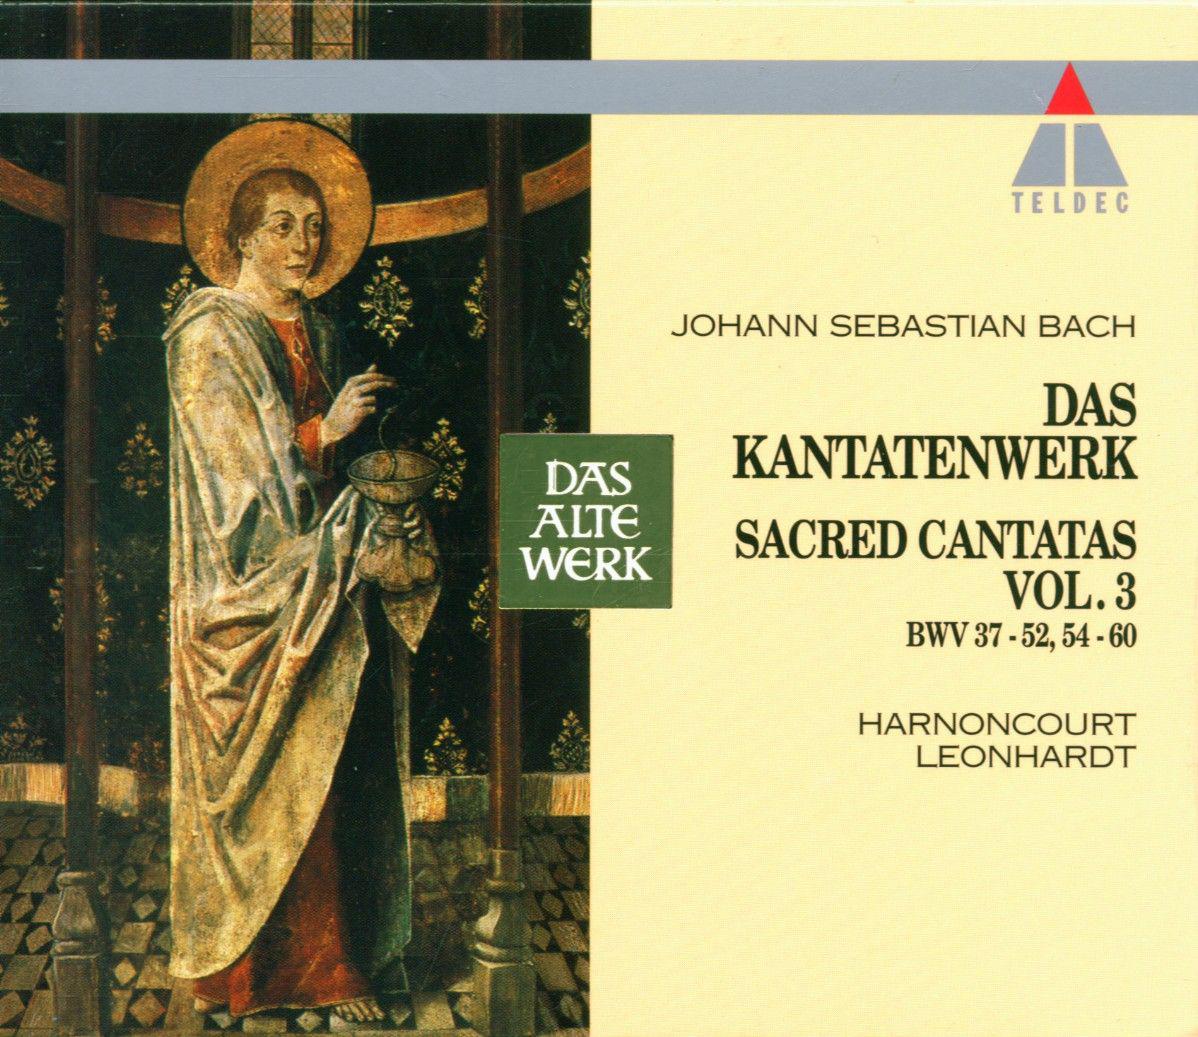 Cantata, Jauchzet Gott in allen Landen, BWV 51:"Jauchzet Gott in allen Landen"